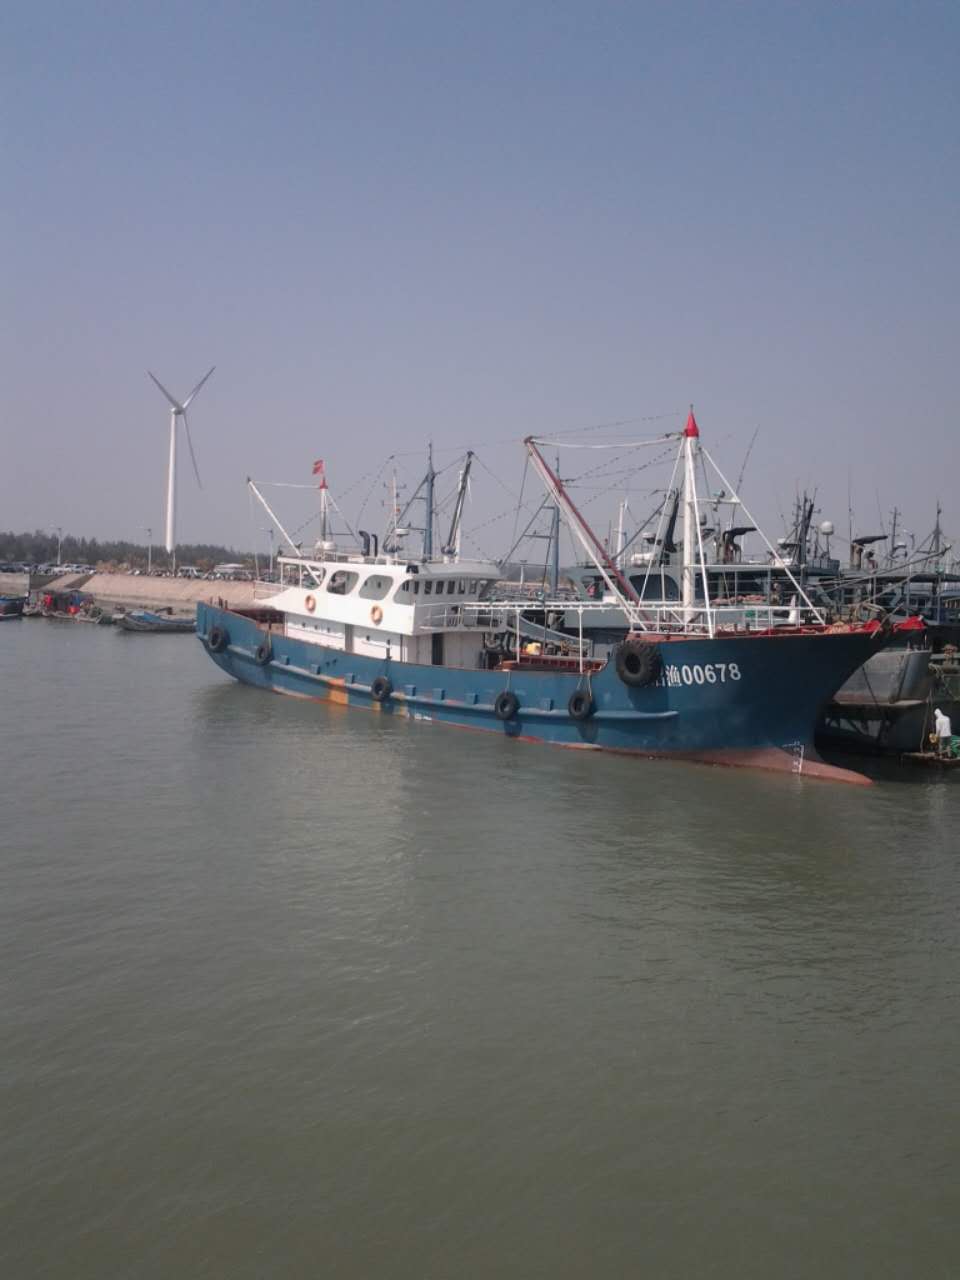 出售福建渔船13年9月下水主机马力980匹37米长6.4米宽 联系电话：13328336292